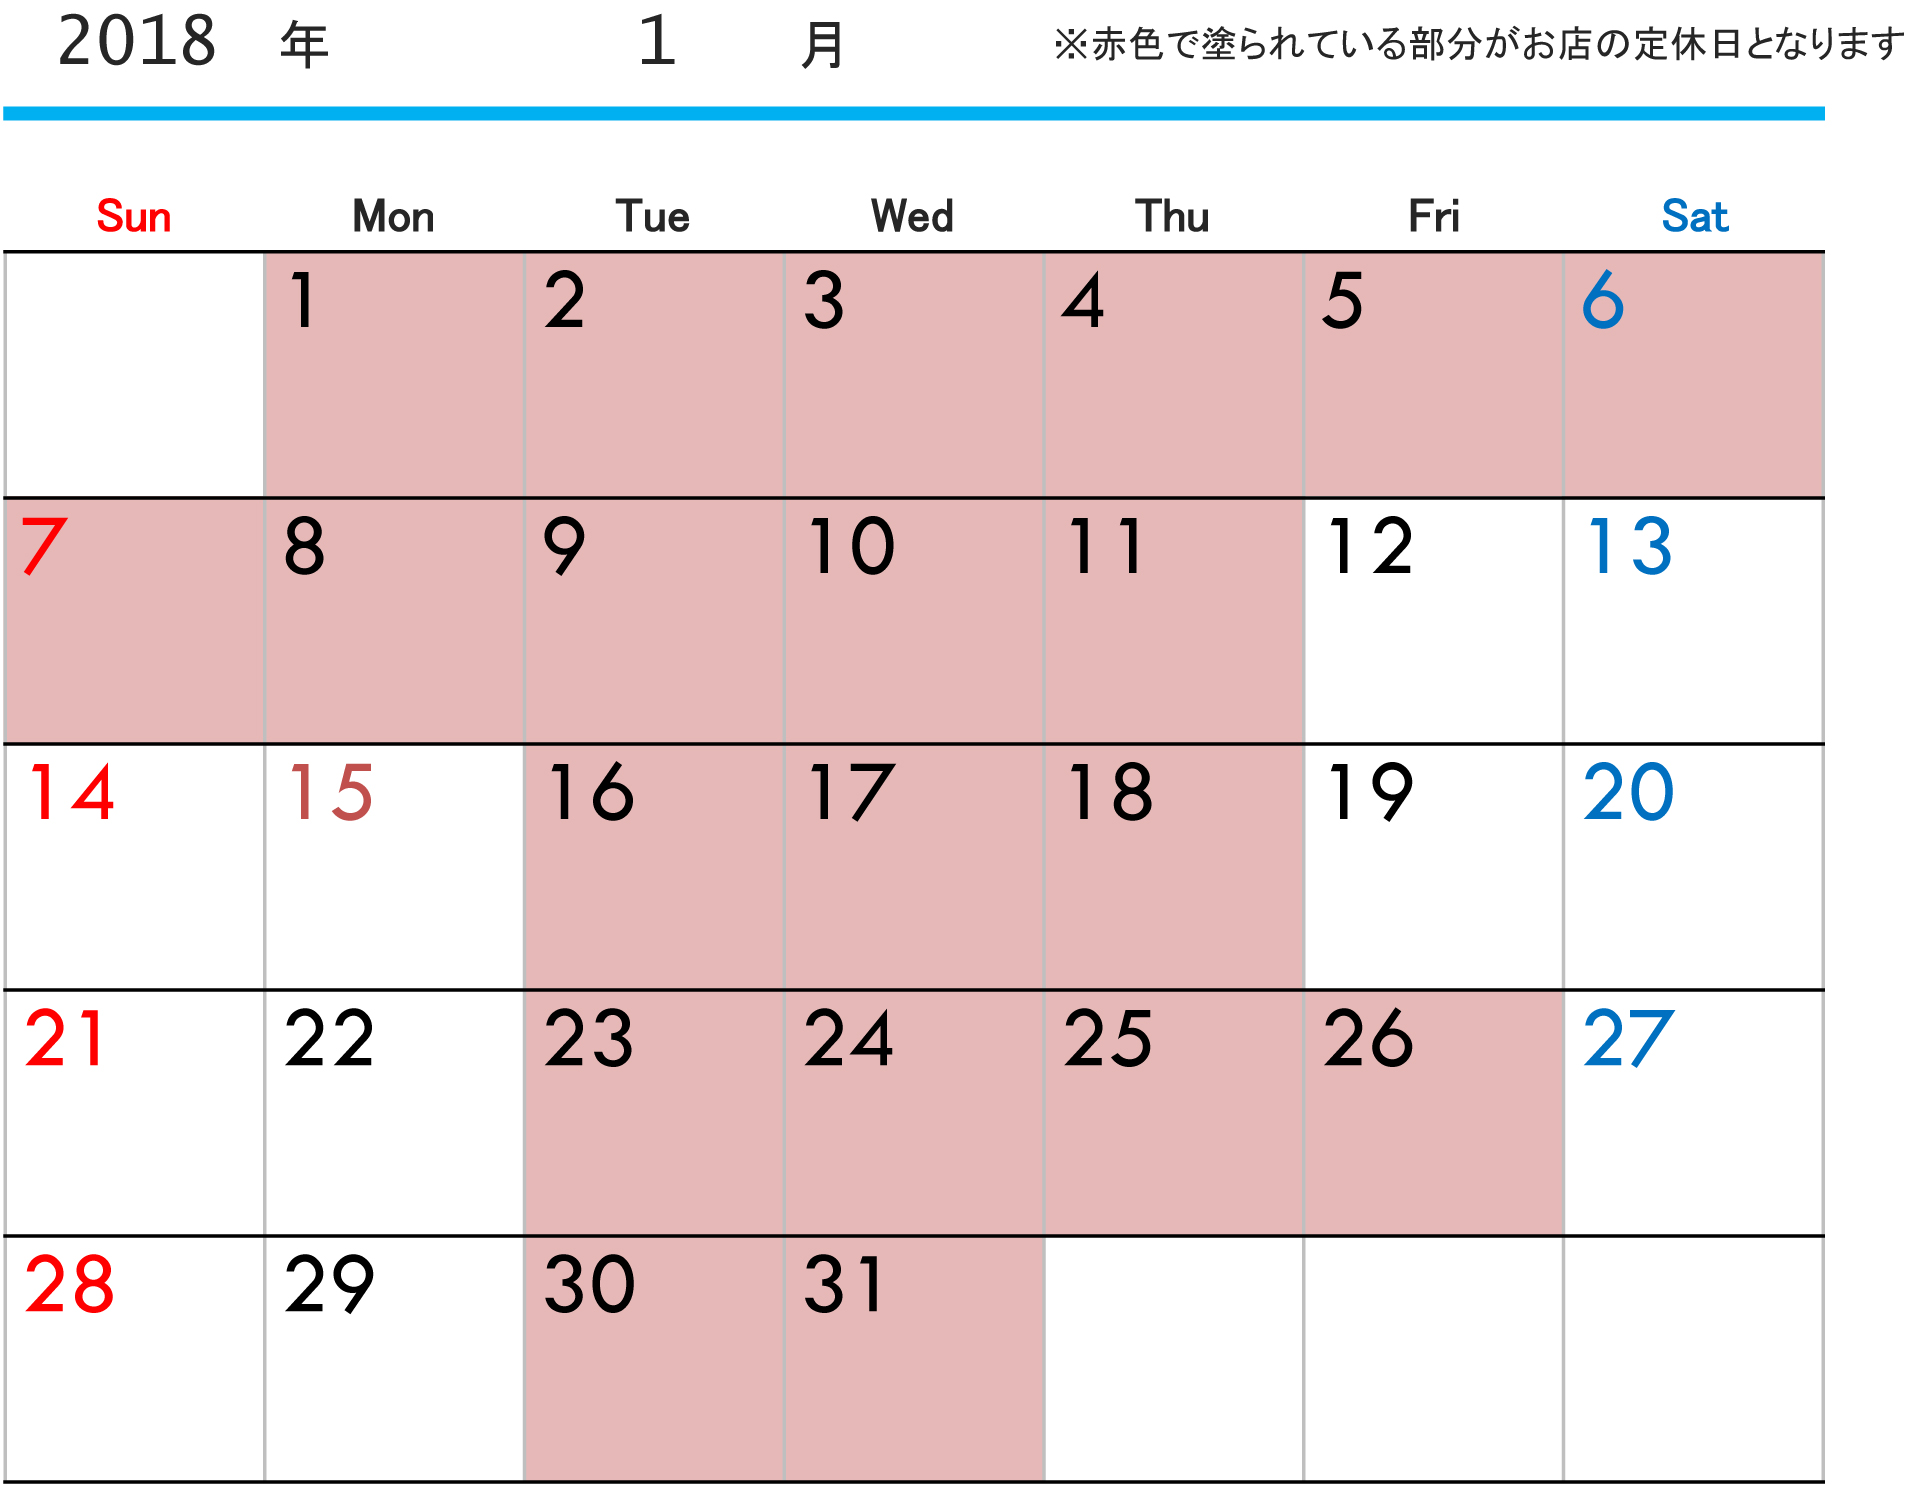 1月定休日カレンダー-カレンダー-1